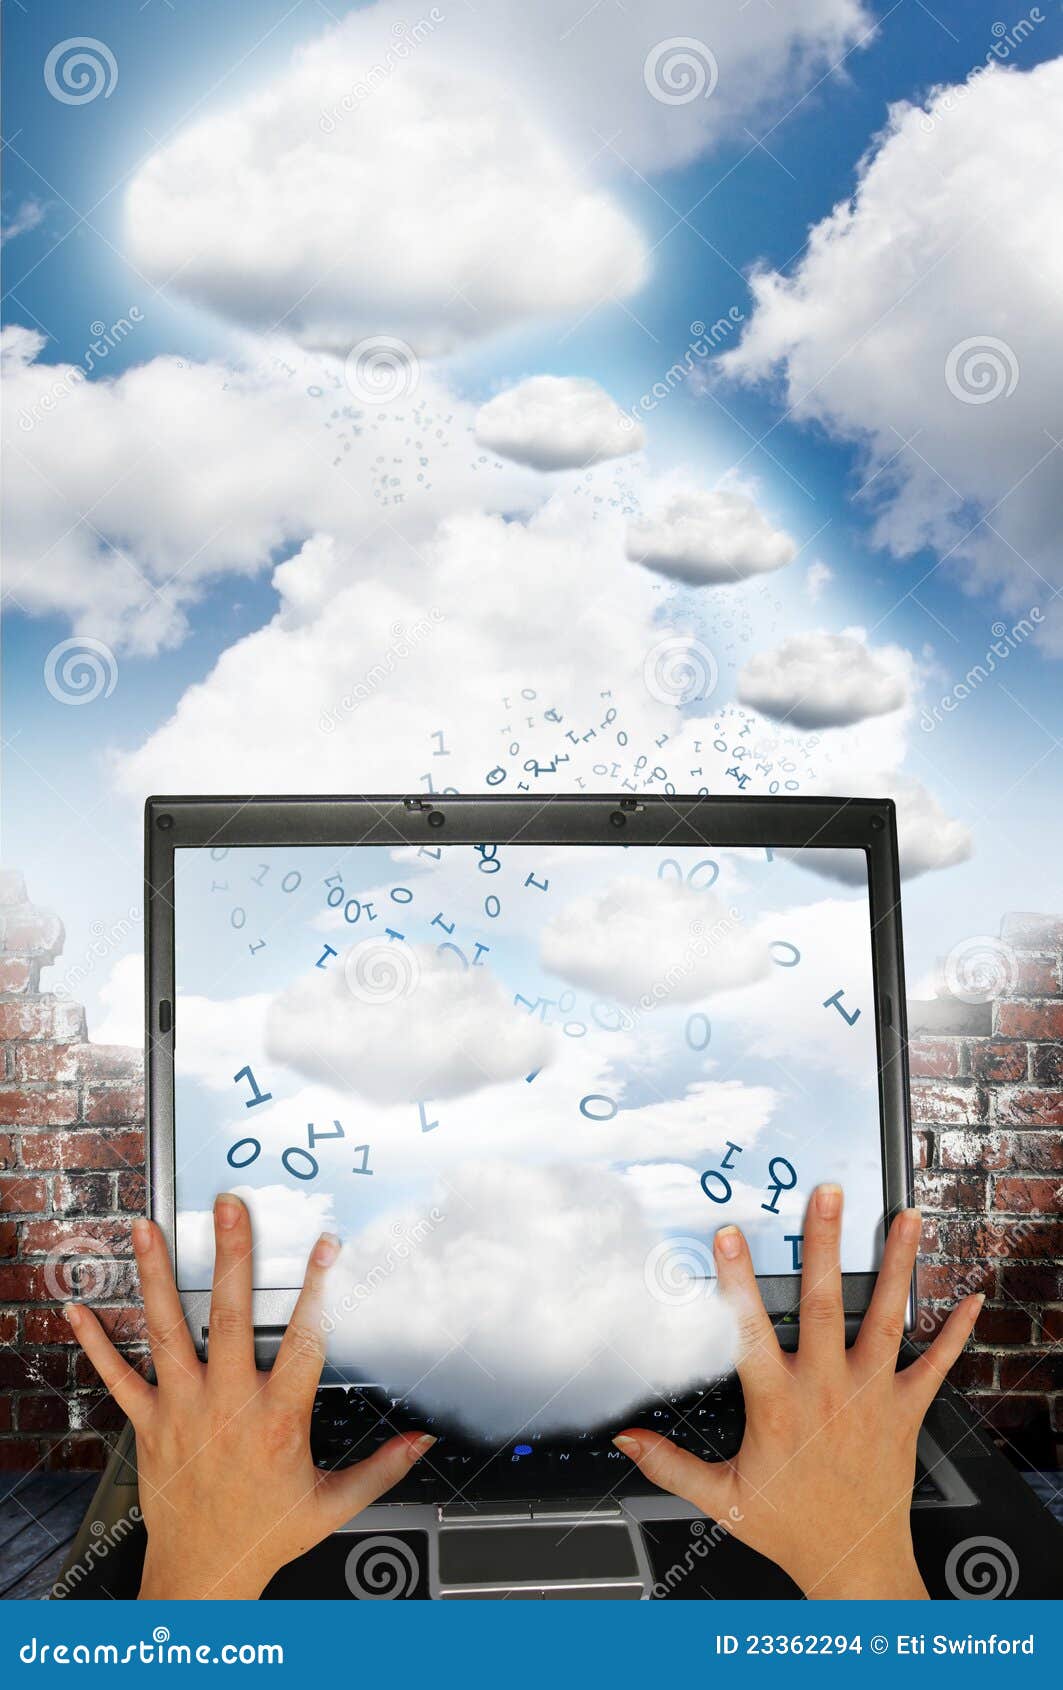 Oklarhetsteknologi. Den binära tegelstenoklarheten clouds bärbar dator för begreppsgrupphänder stora flyttande teknologi till lopp två övre väggnollor